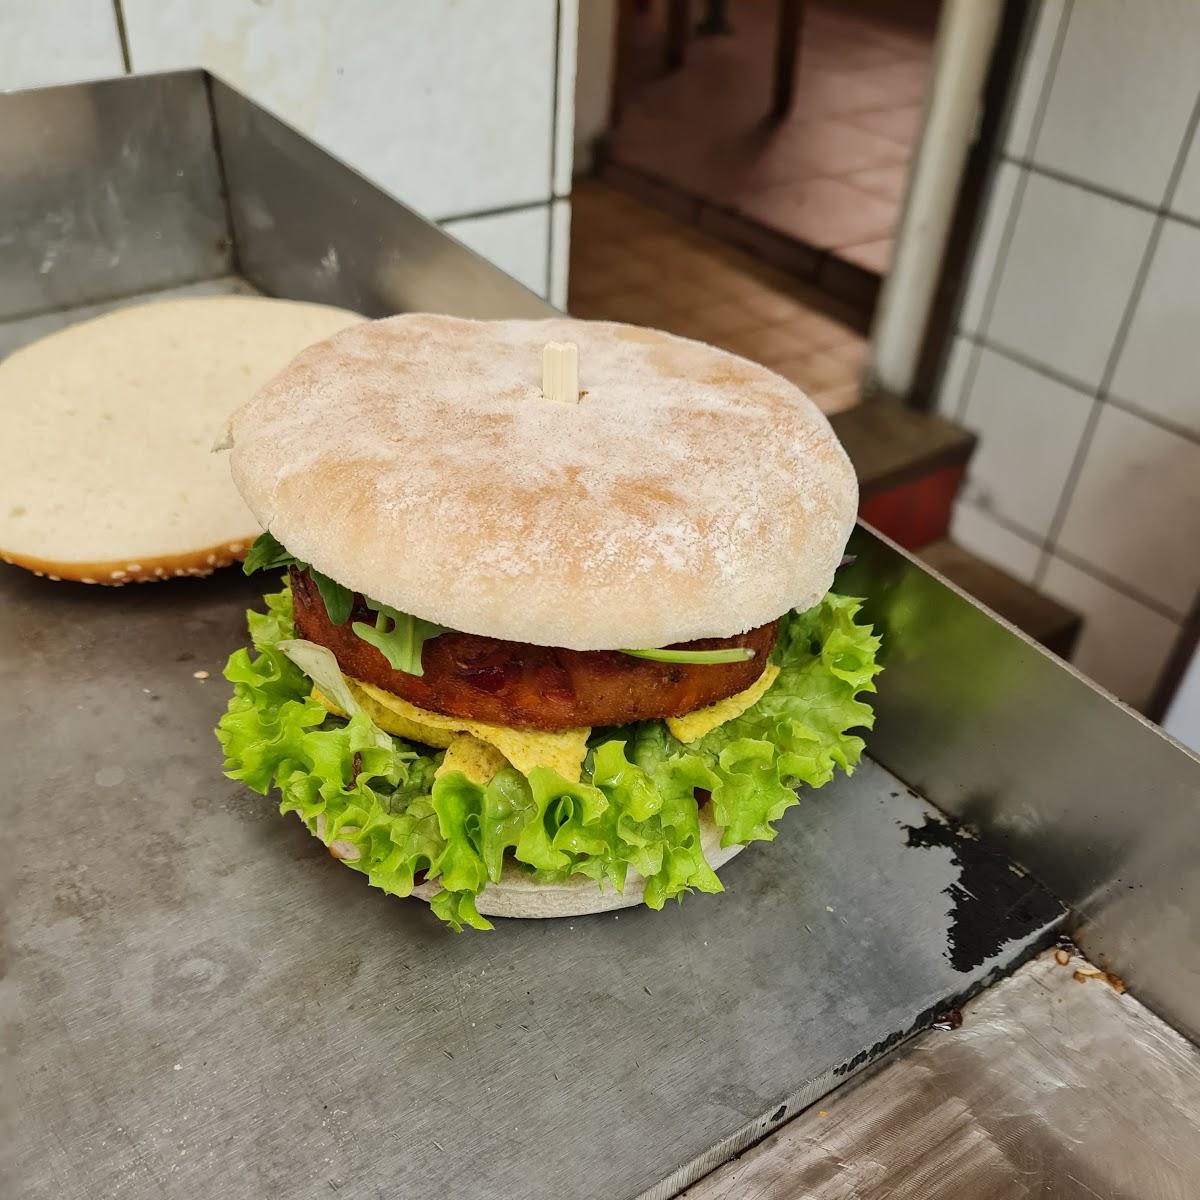 Restaurant "My Burger & Pizza" in Mannheim